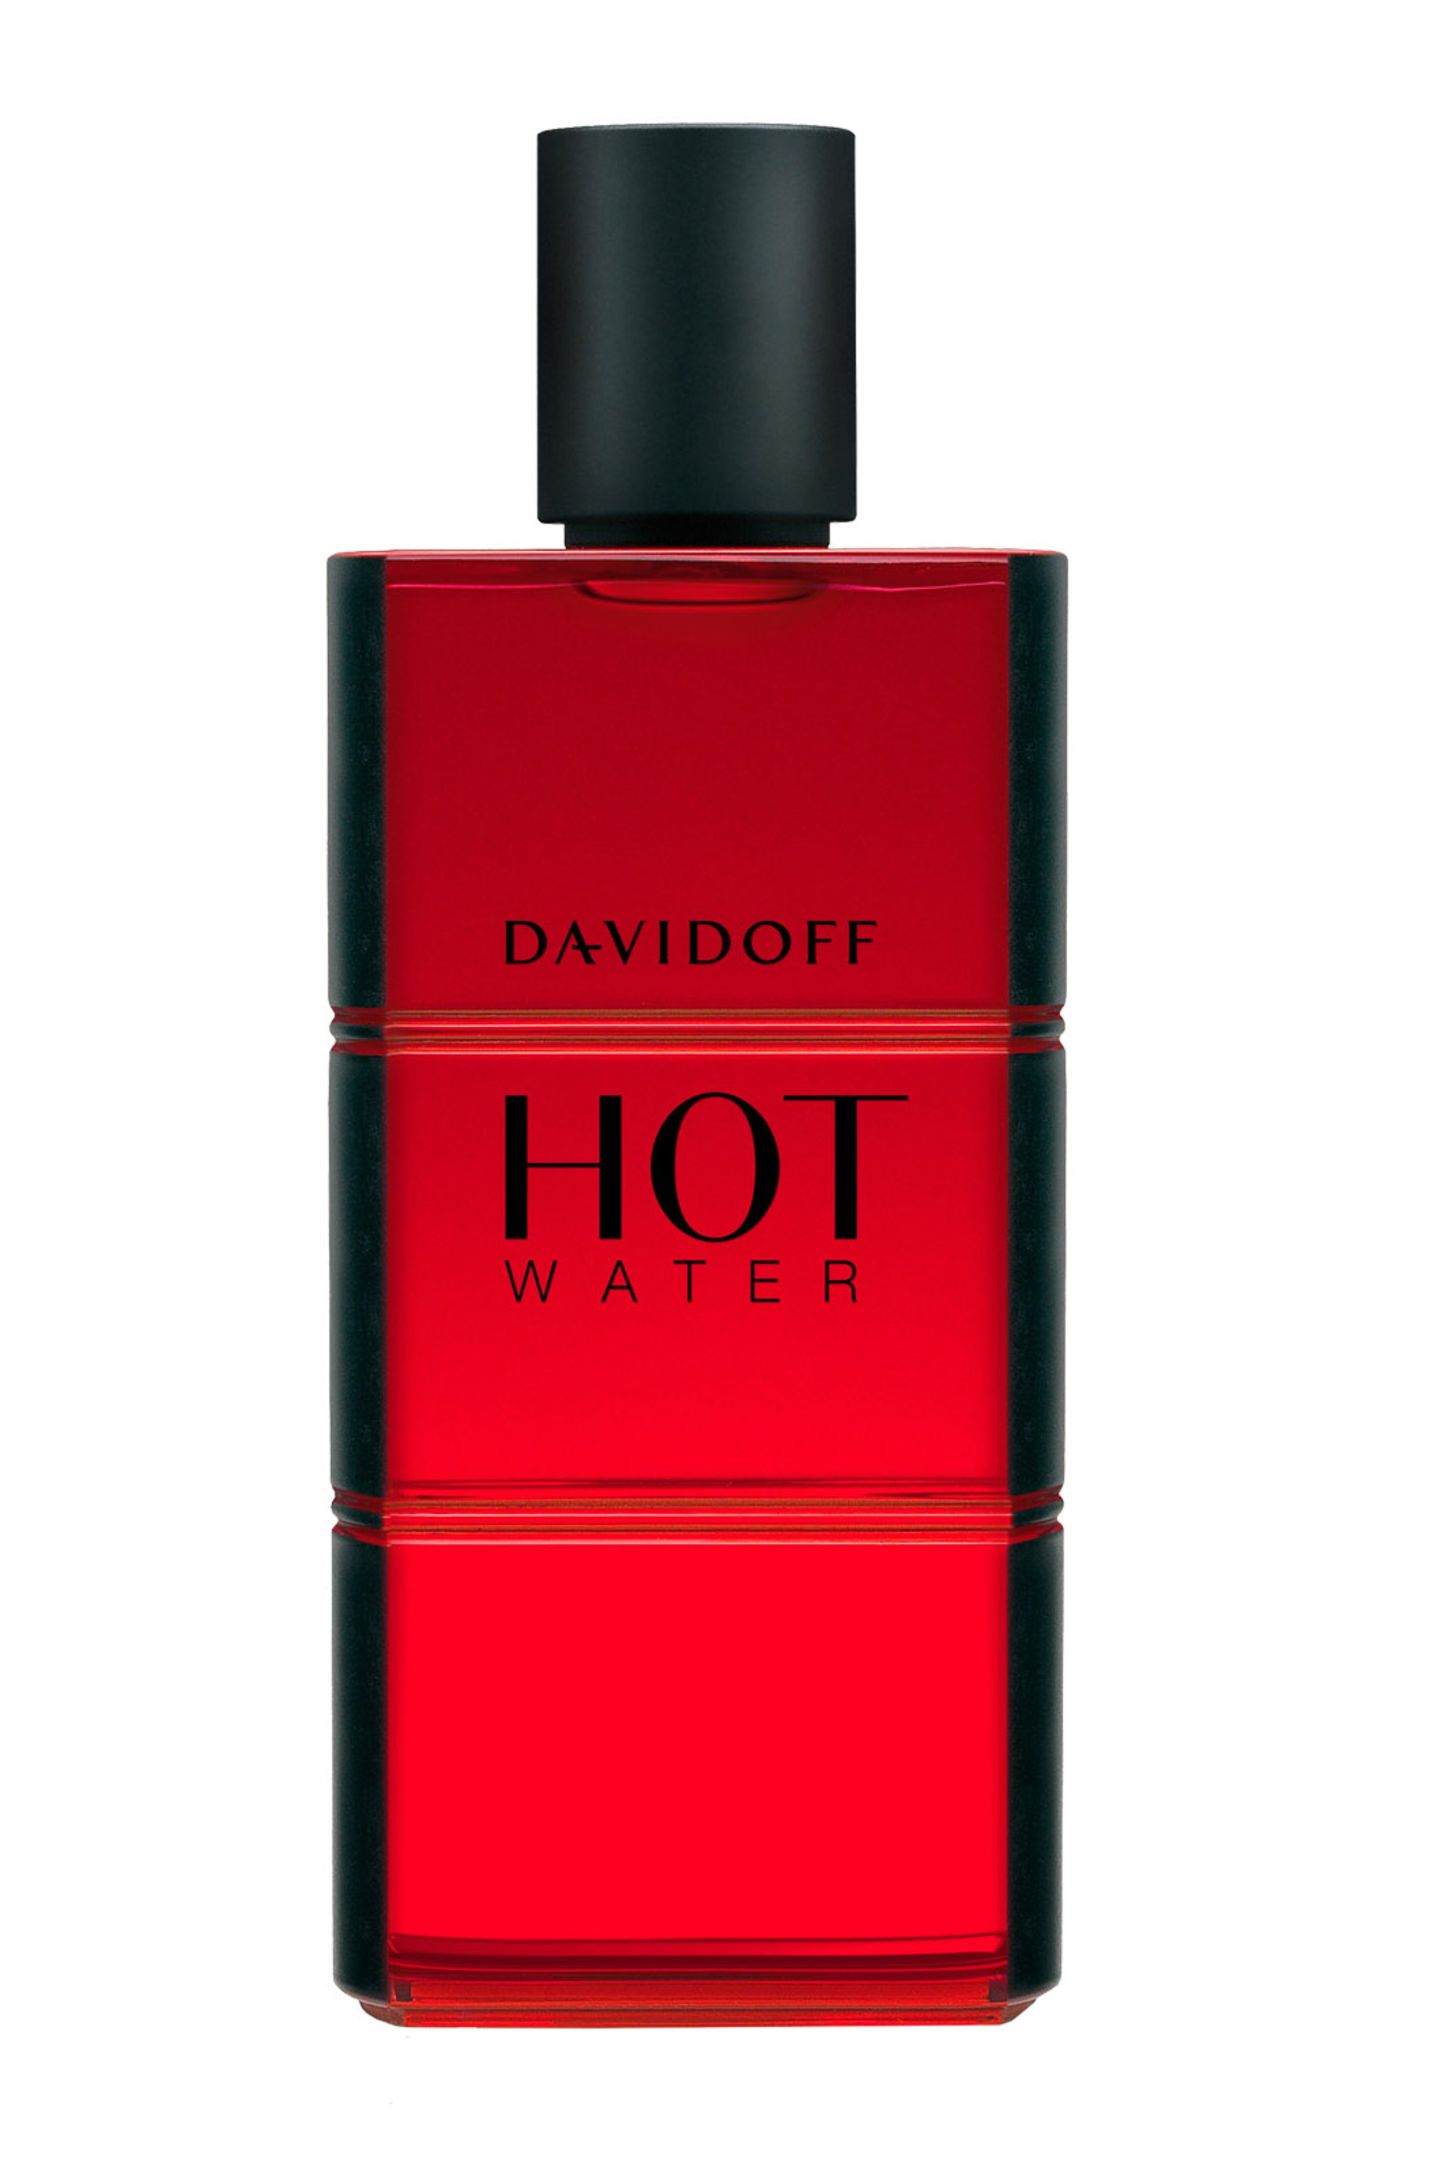 Erotik per Knopfdruck: "Hot Water" von Davidoff, EdT, 60 ml, ca. 50 Euro